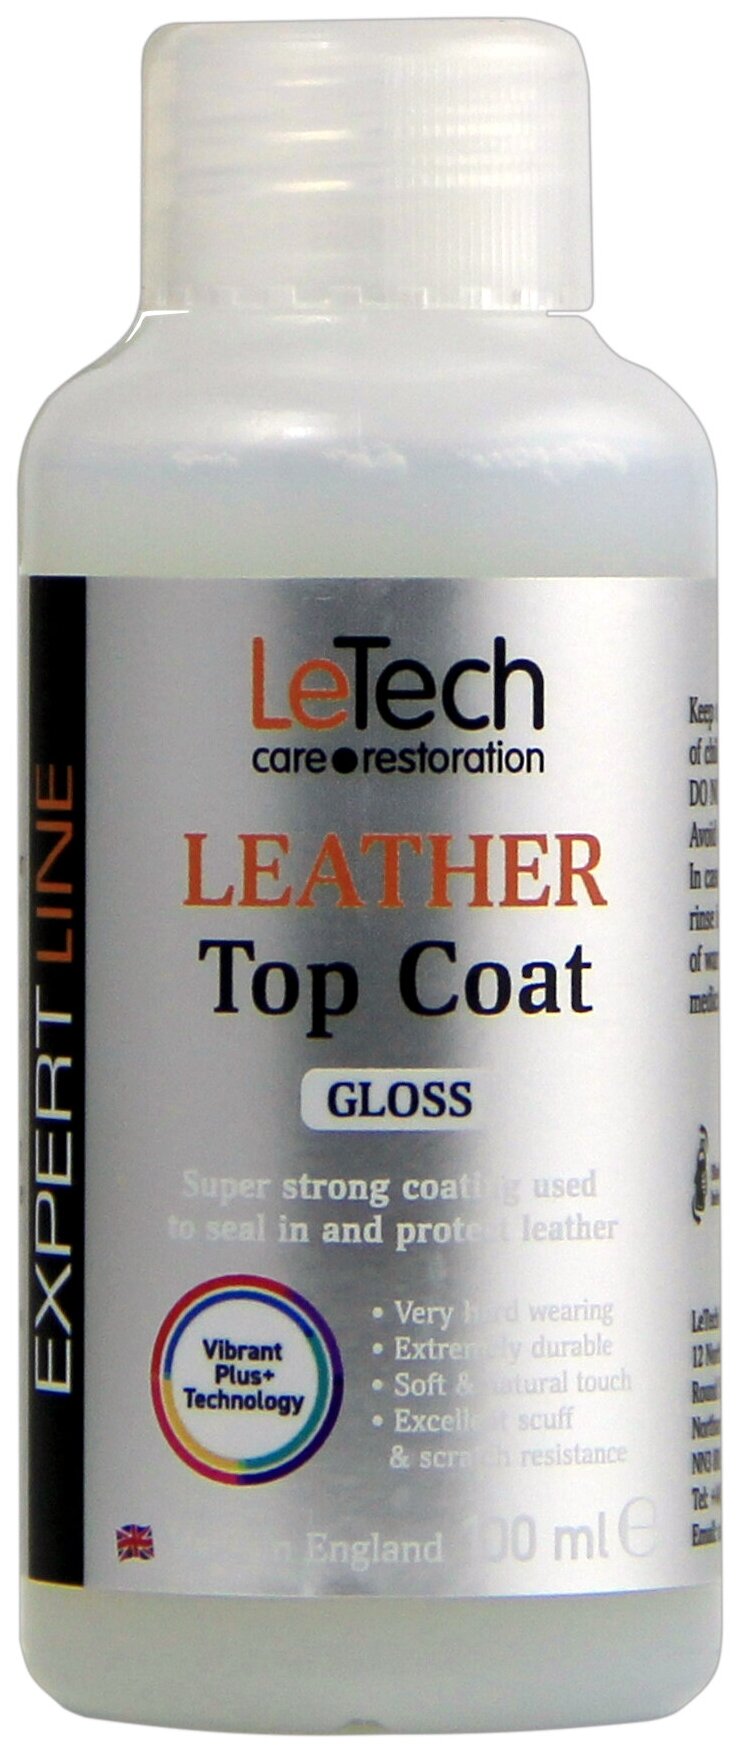 Защитный глянцевый лак для кожи после ремонта, после покраски, LeTech (Leather Top Coat) Gloss 100ml